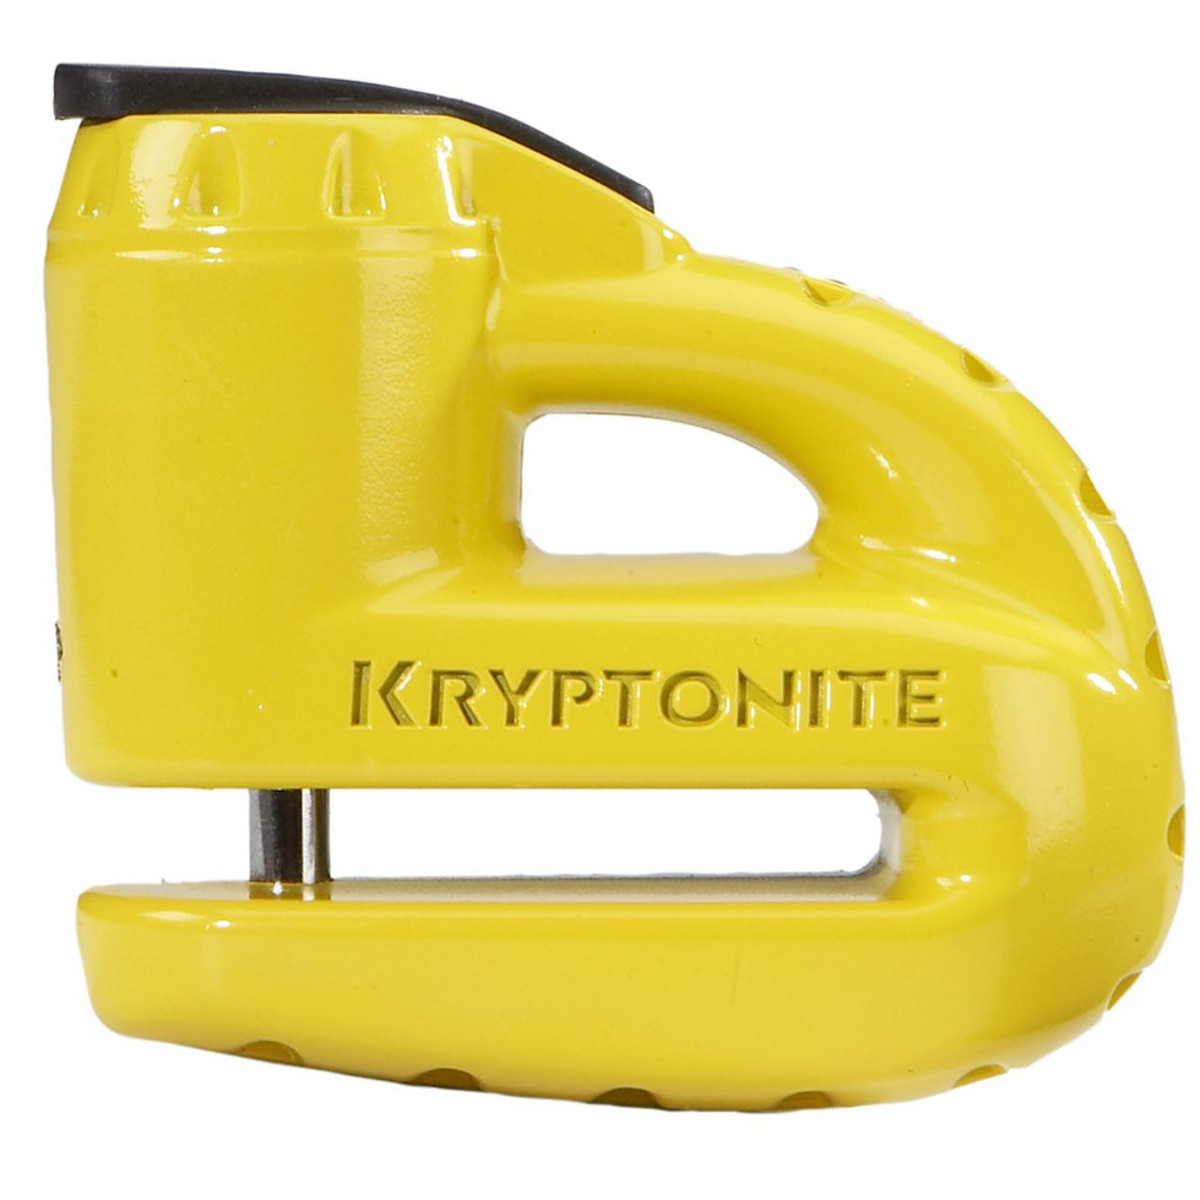 Kryptonite Disc Lock Keeper S-52 Steel - Yellow